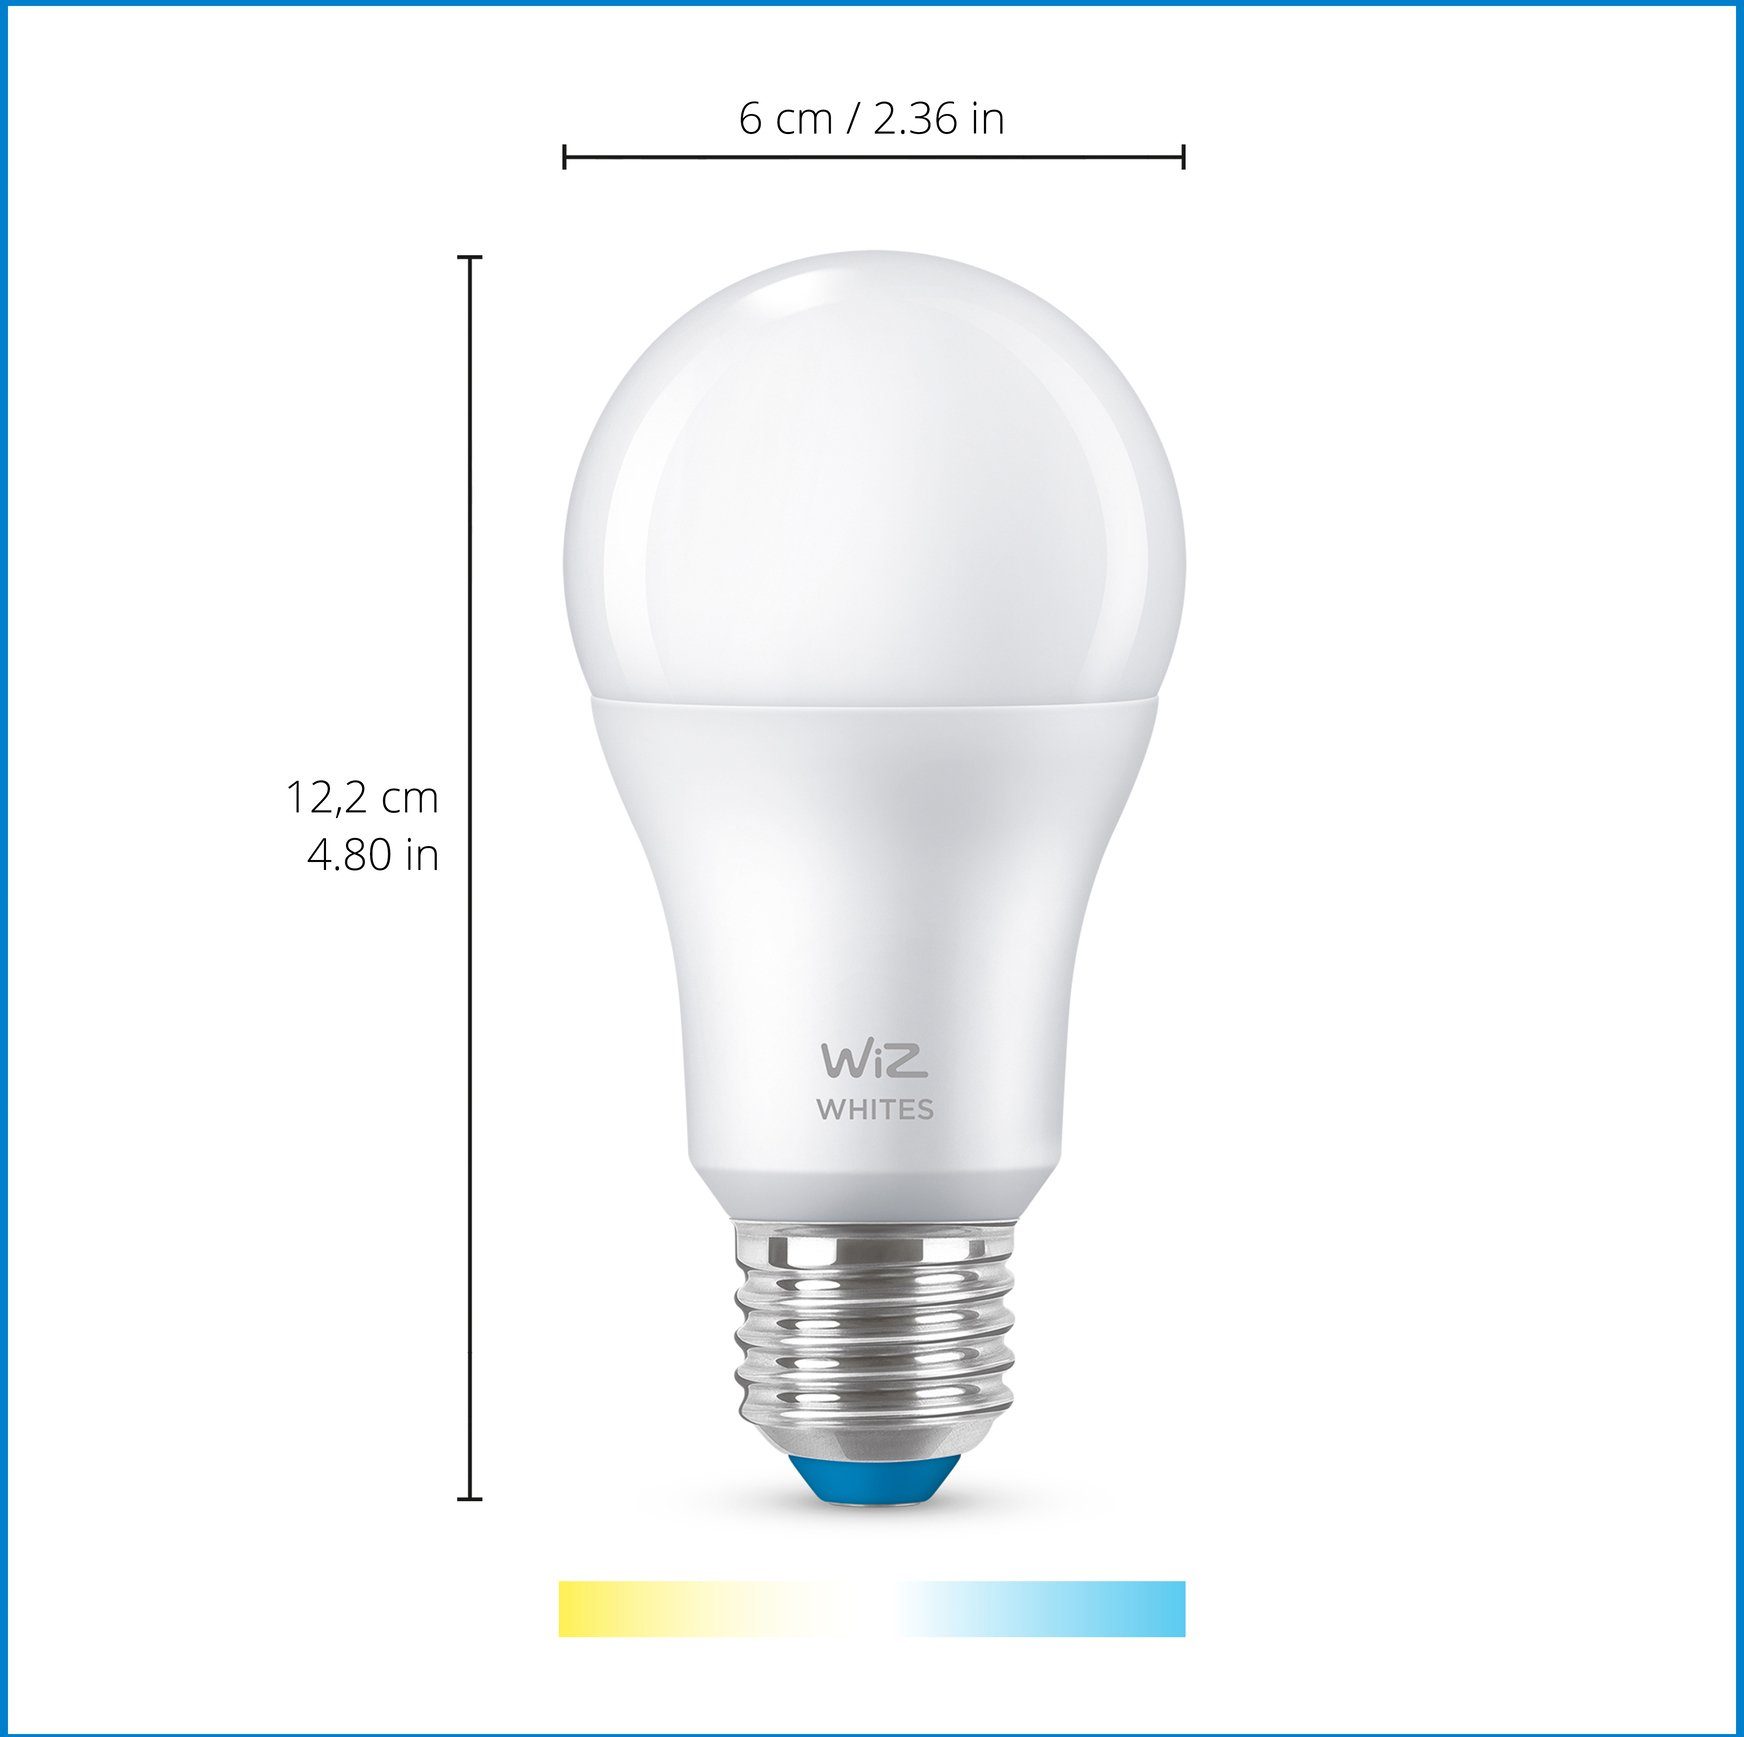 60W E27 Standardform Neutralweiß Doppelpack, LED-Leuchtmittel Tunable White WiZ matt E27,